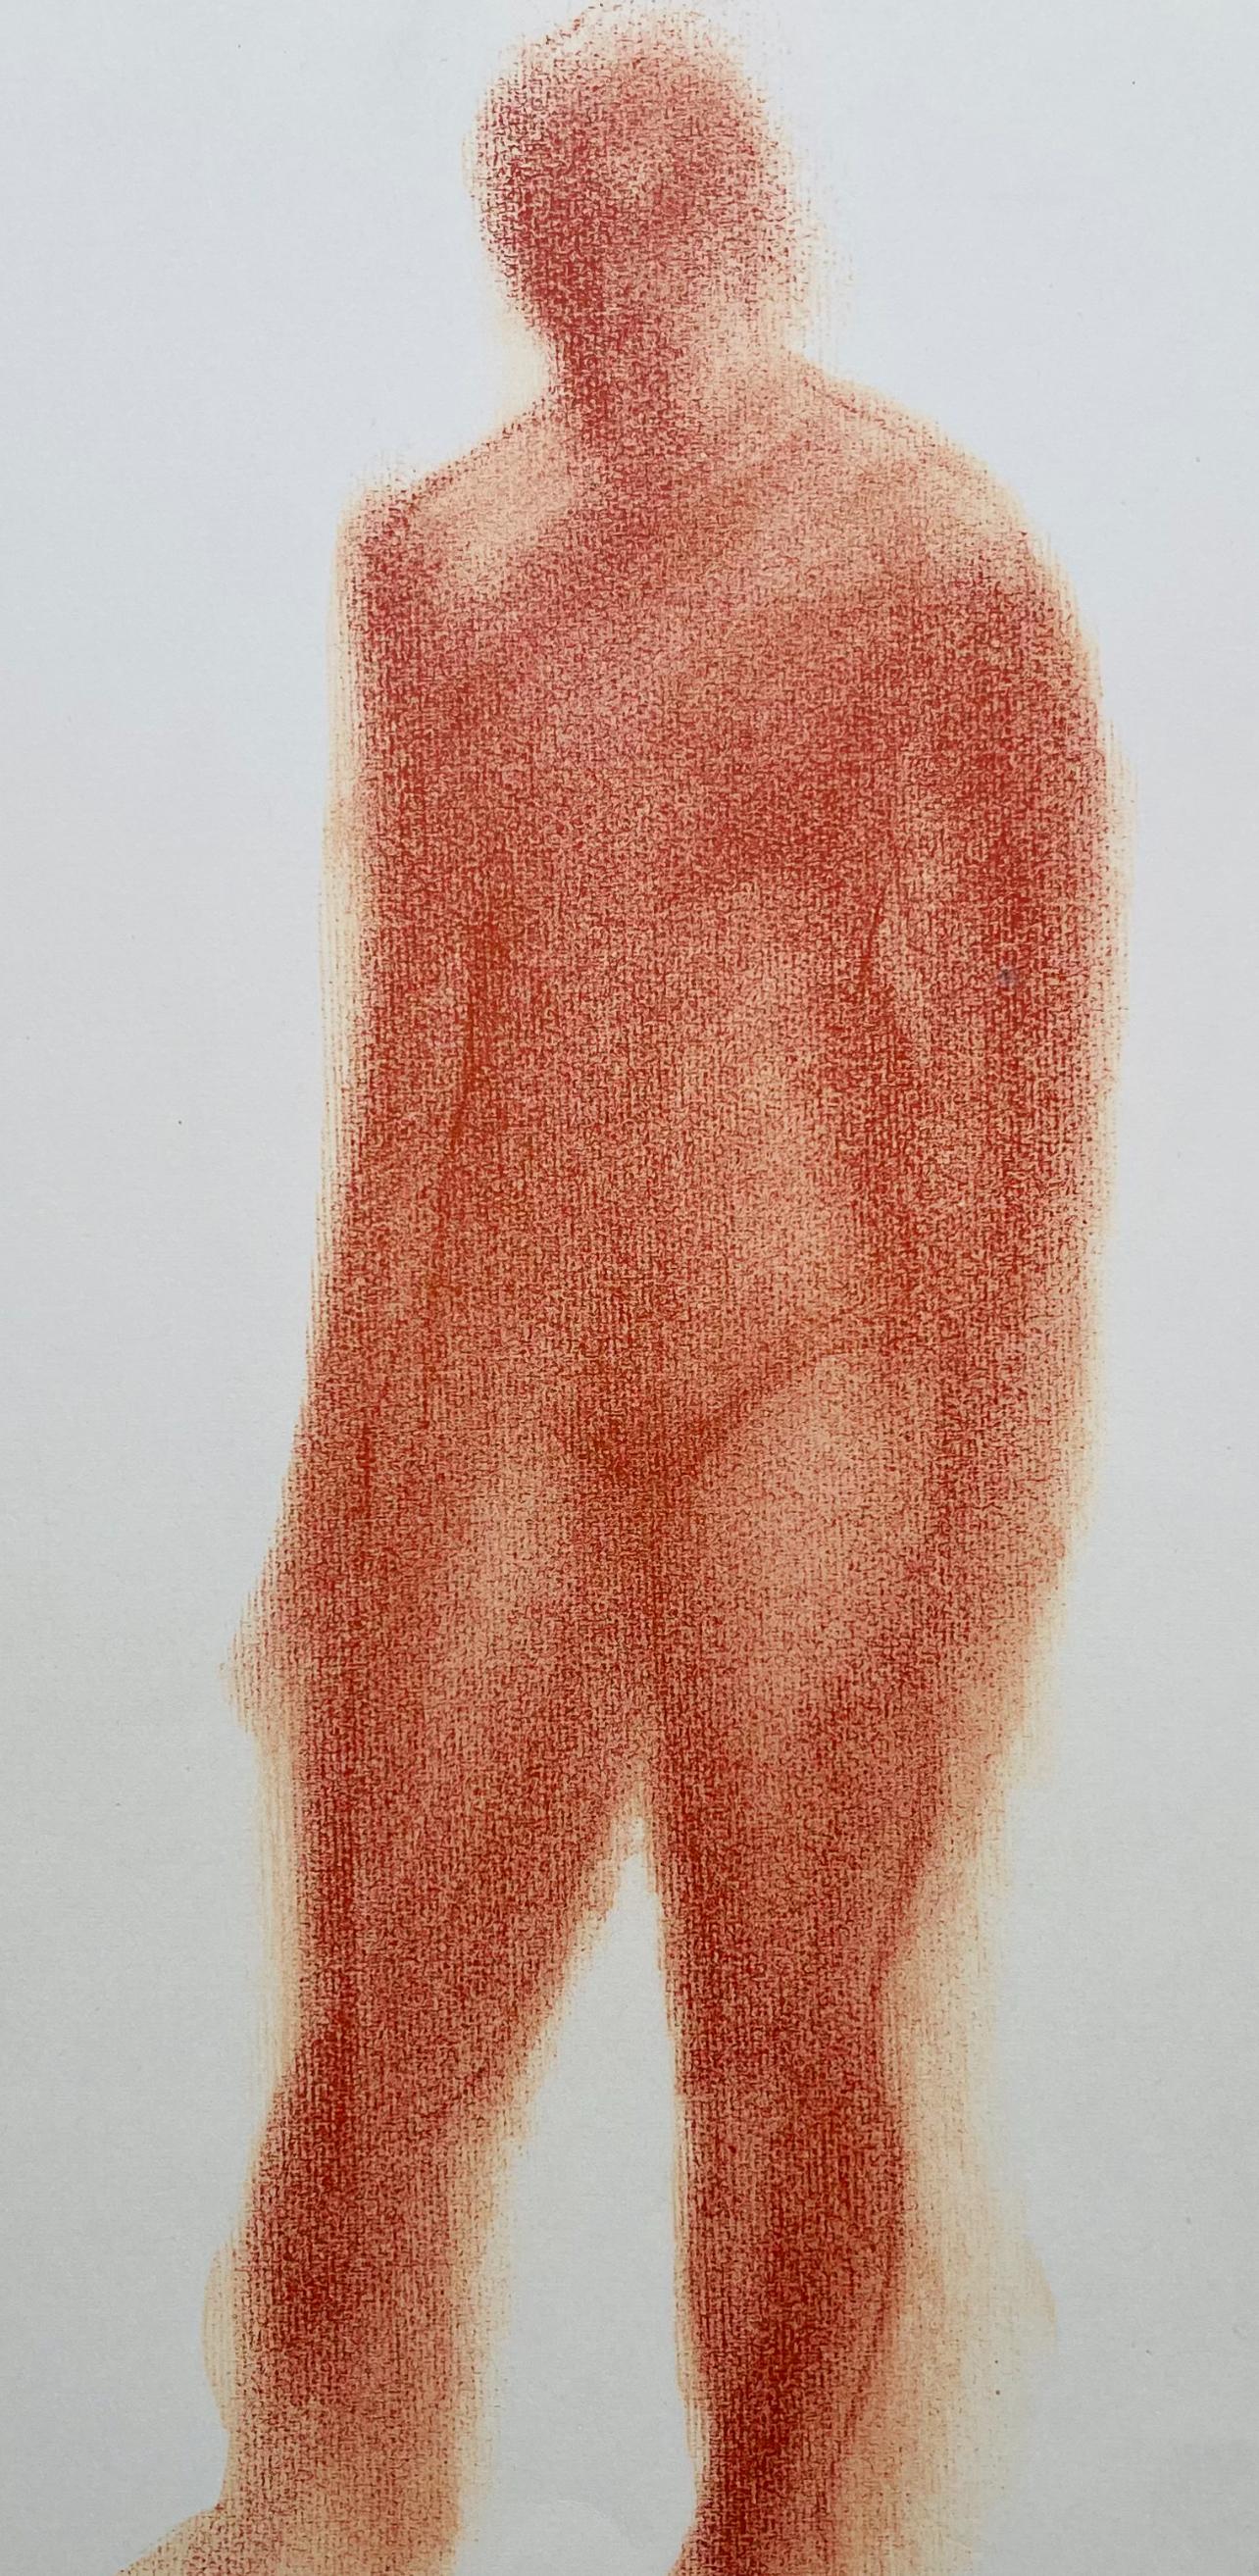 Derain, Composition, Derrière le miroir (after) - Print by André Derain